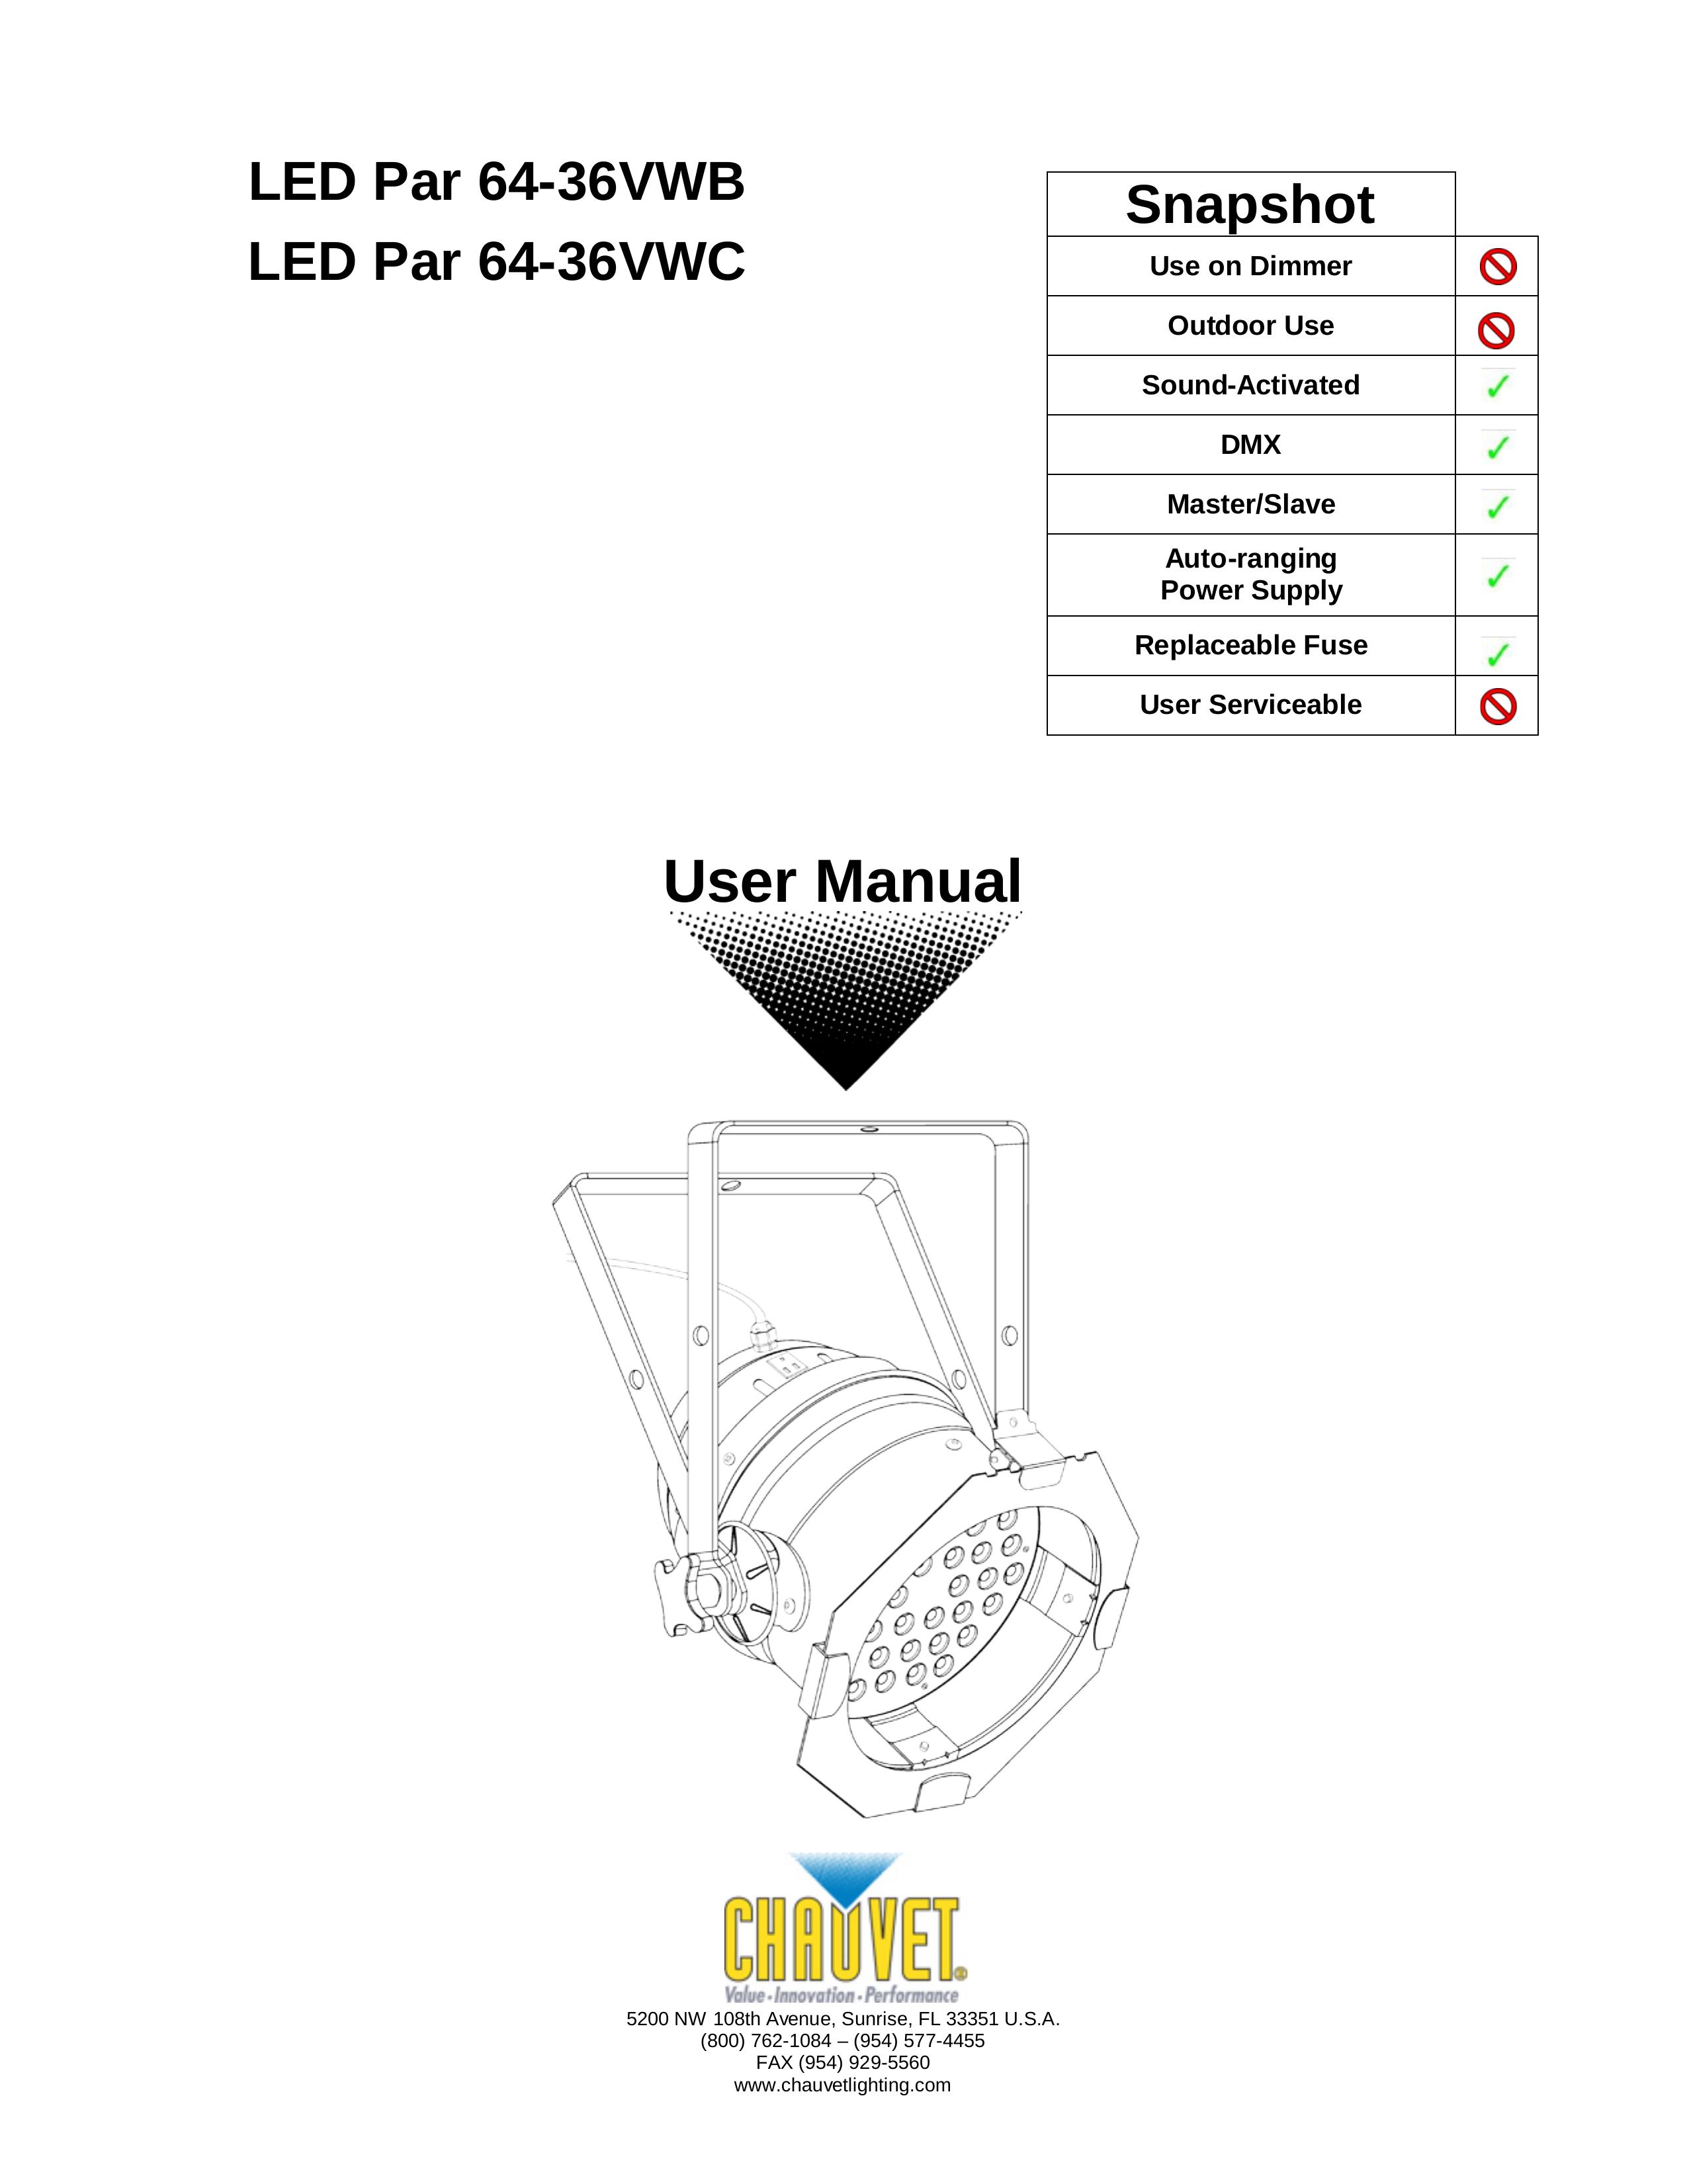 Chauvet 64-36VWC Landscape Lighting User Manual